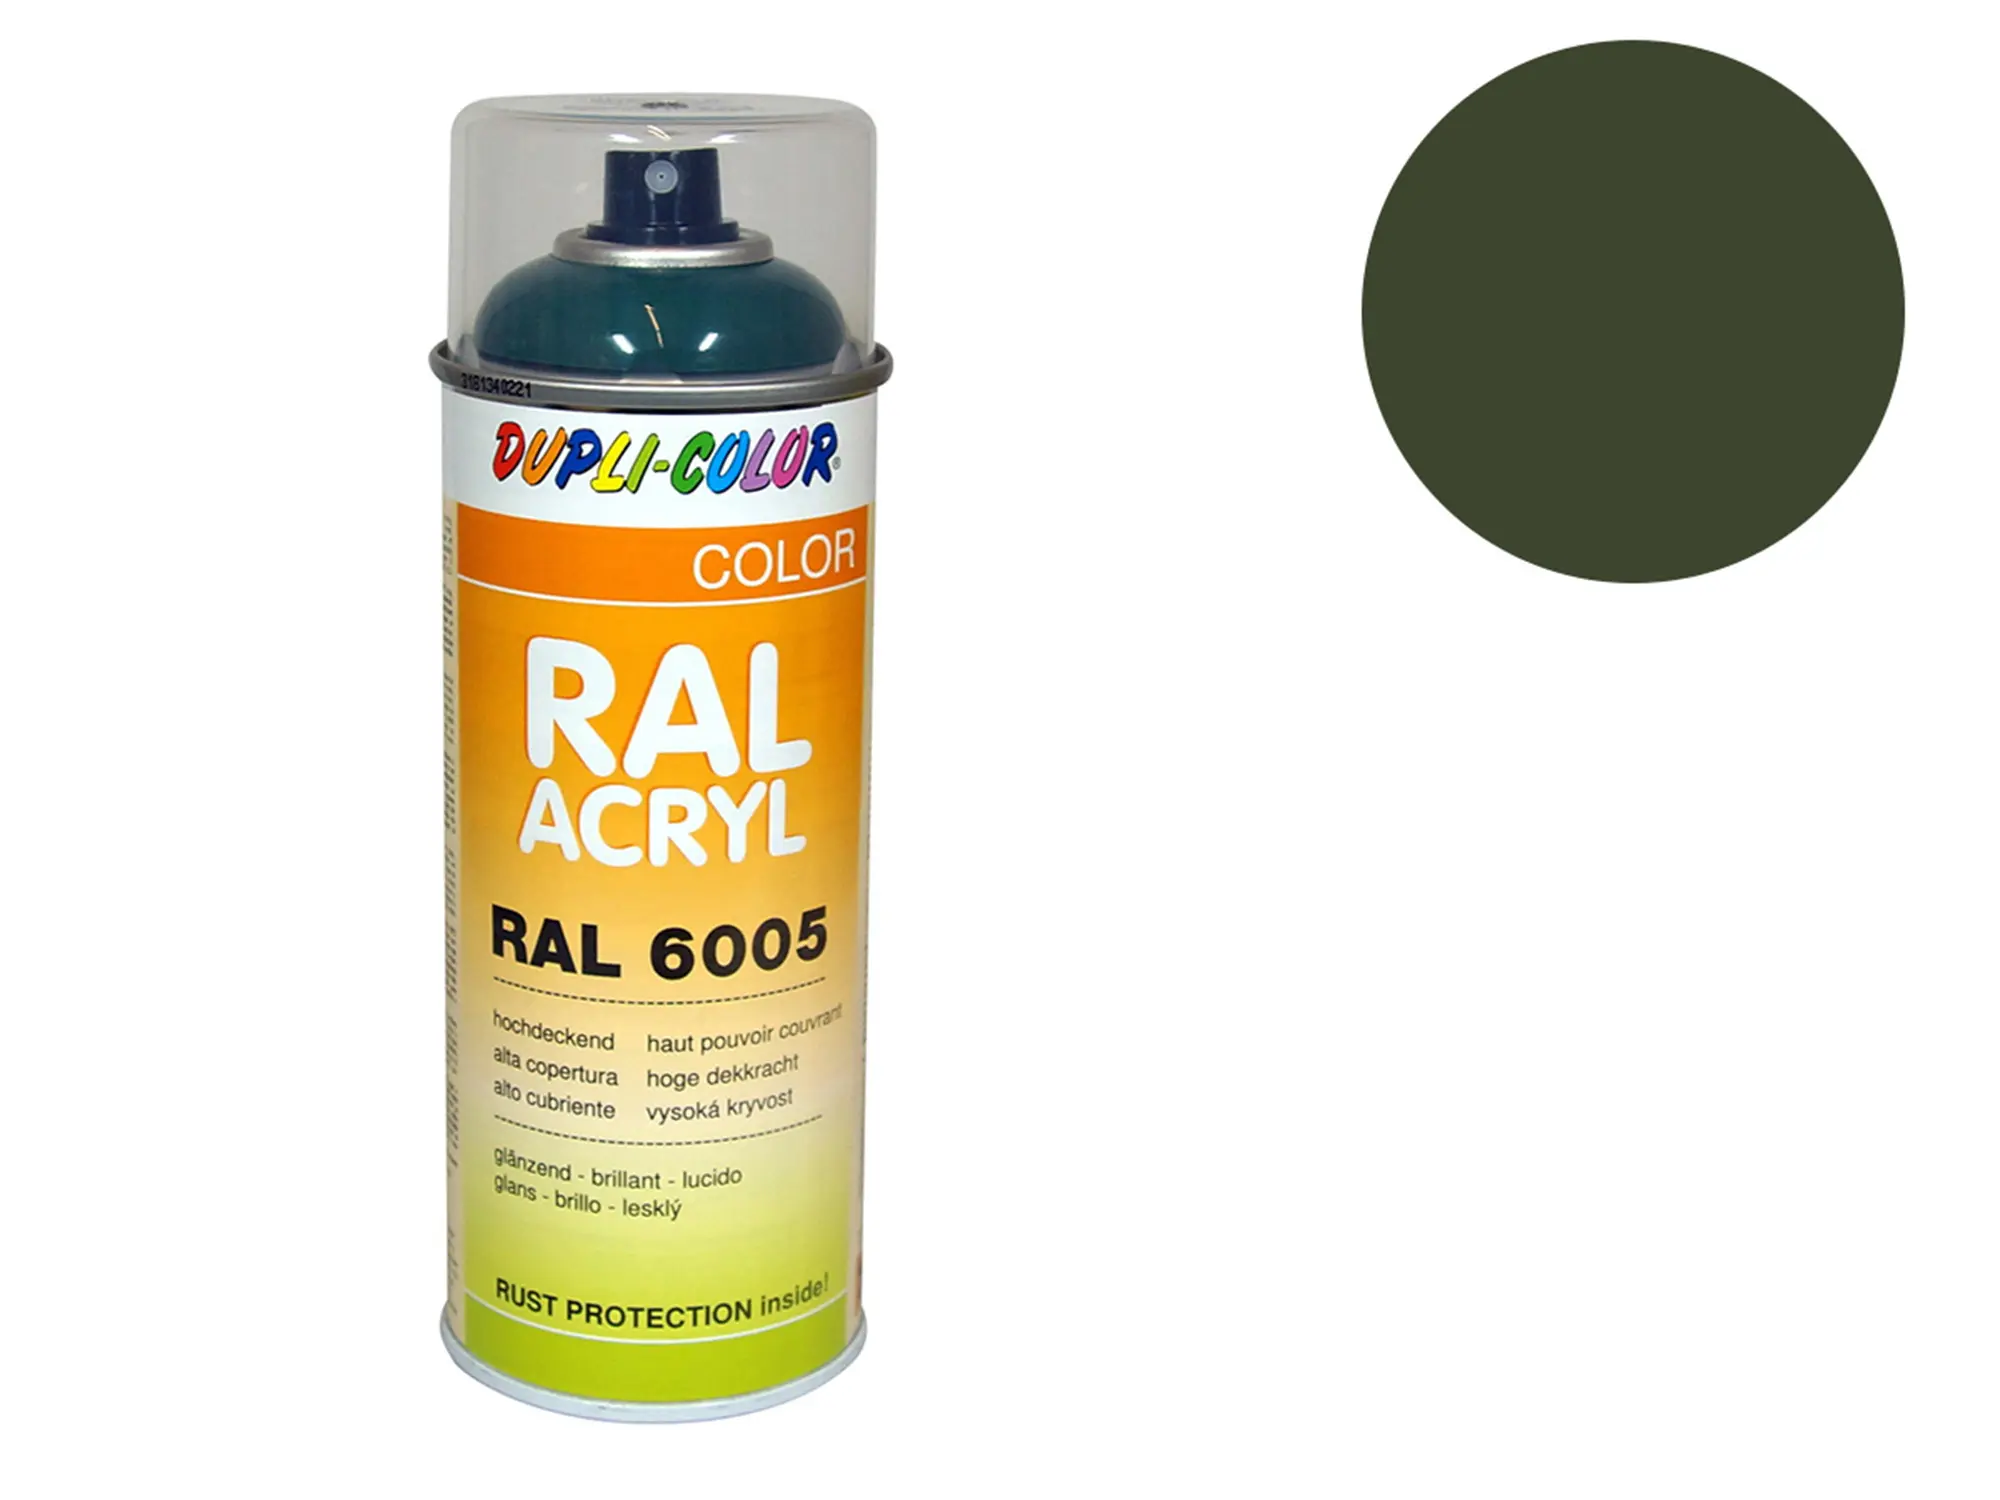 Dupli-Color Acryl-Spray RAL 6003 olivgrün, glänzend - 400 ml, Art.-Nr.: 10064811 - Bild 1